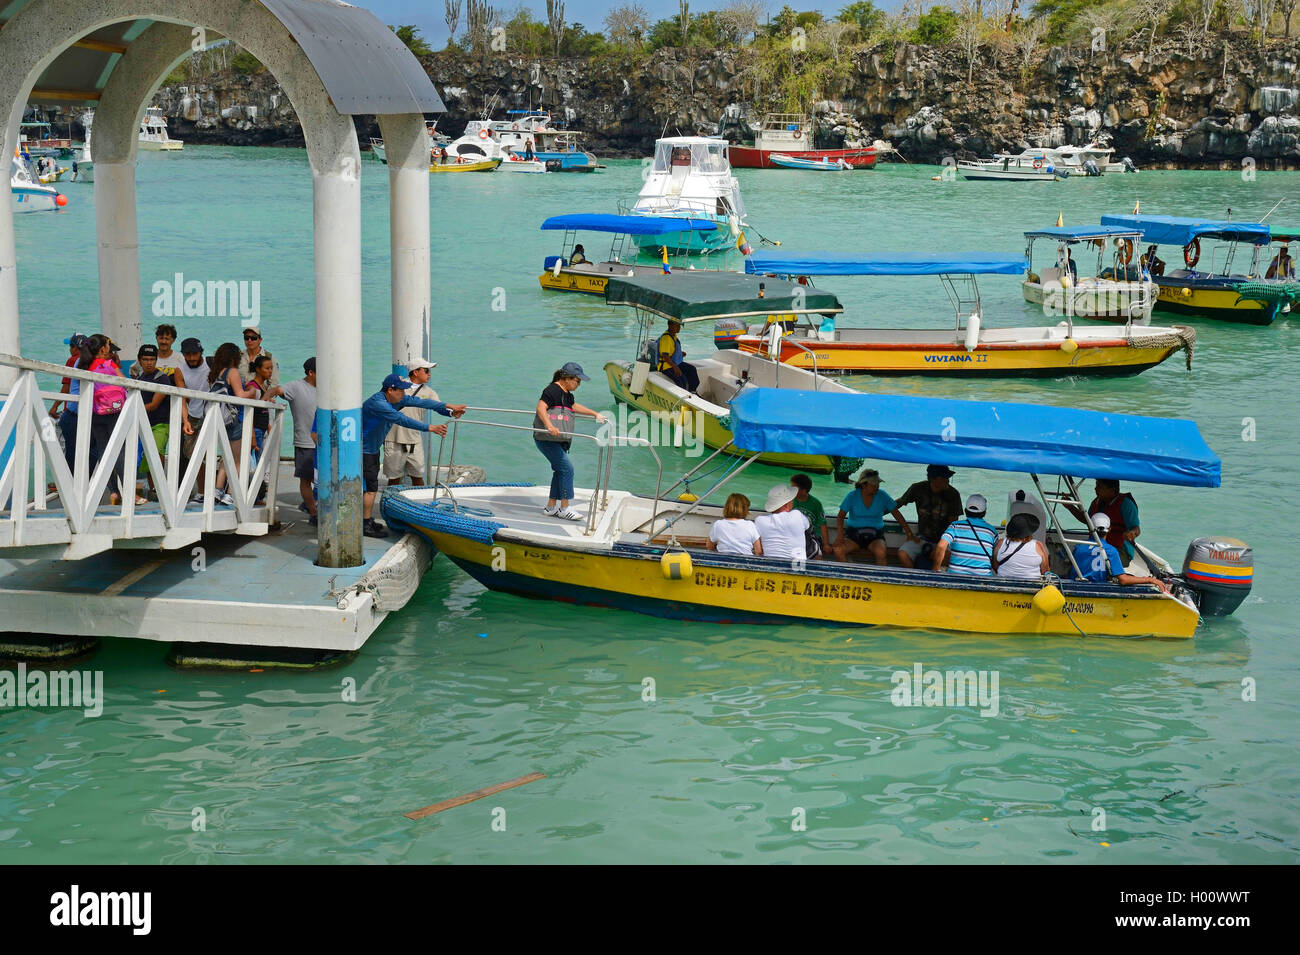 Porto di sbarco di ponti e la banchina per le navi da crociera e di escursioni in barca, Ecuador Isole Galapagos, Santa Cruz, Puerto Ayora Foto Stock